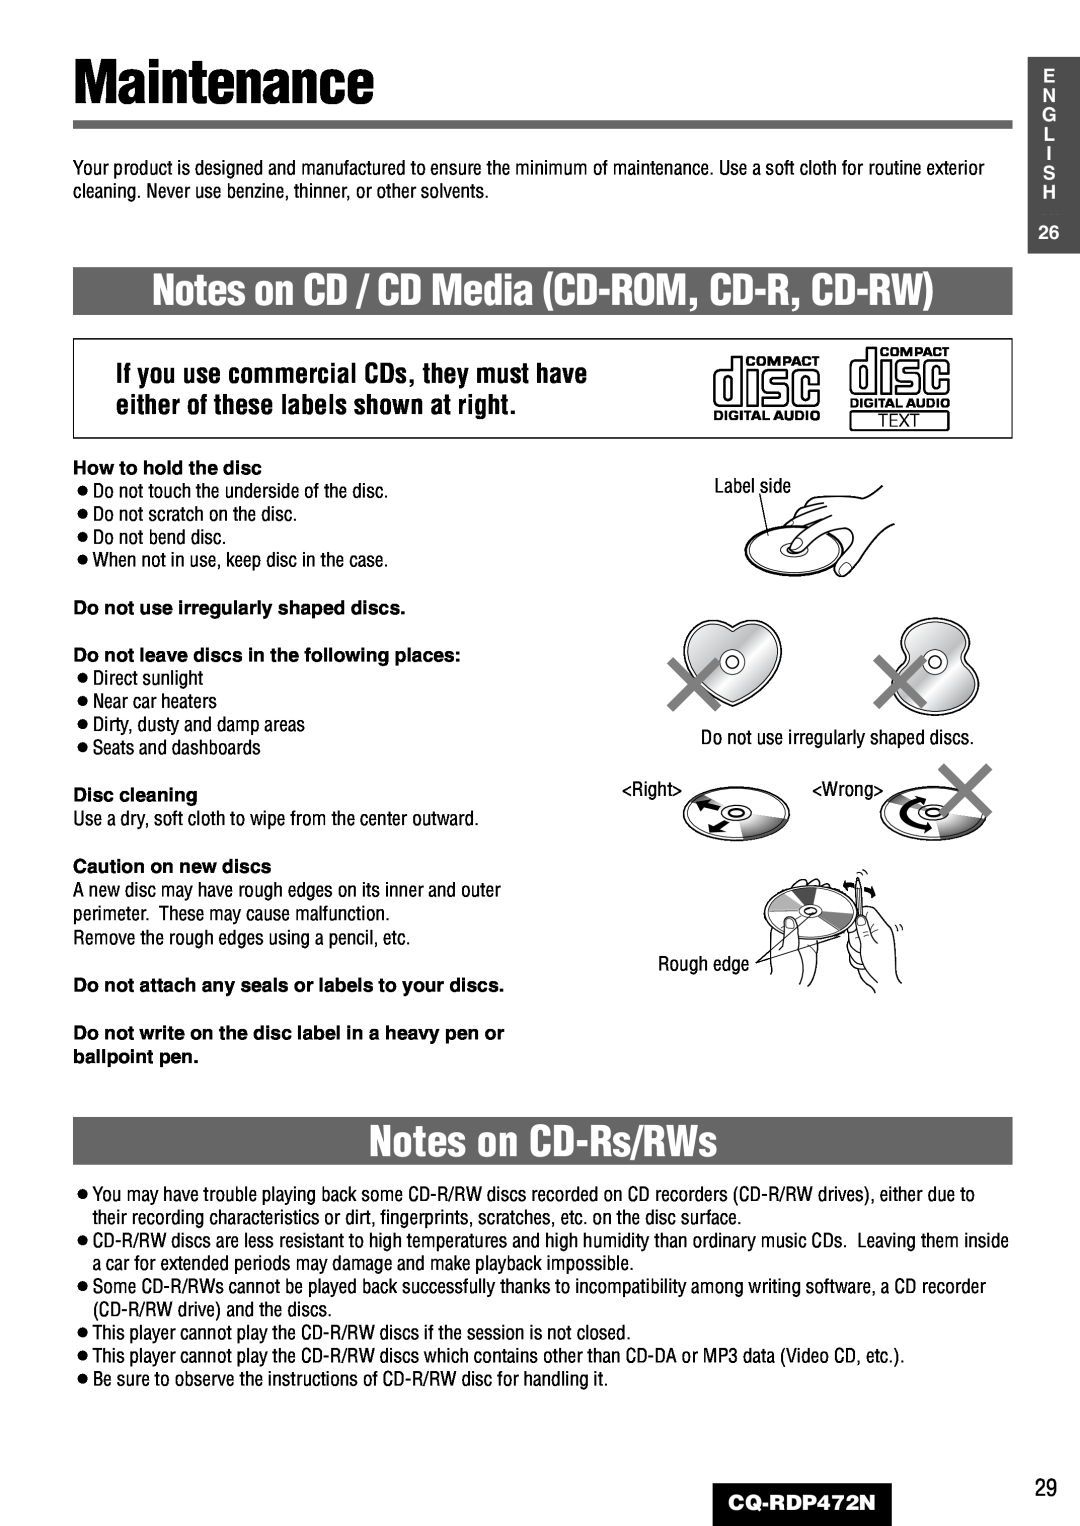 Panasonic CQ-RDP472N manual Maintenance, Notes on CD-Rs/RWs, Notes on CD / CD Media CD-ROM, CD-R, CD-RW 